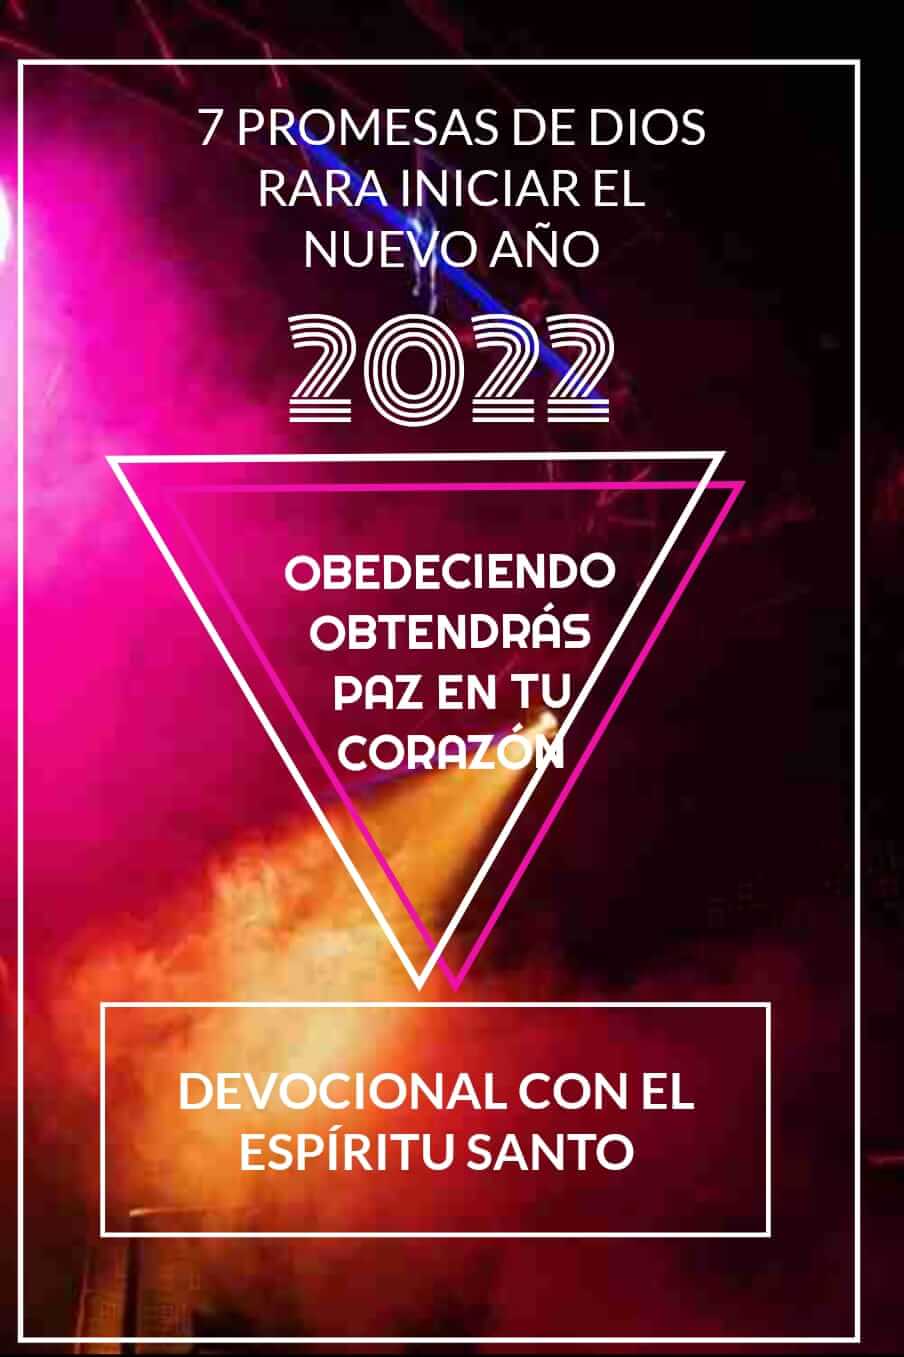 7 PROMESAS PARA INICIAR EL AÑO 2022 CON BENDICIÓN